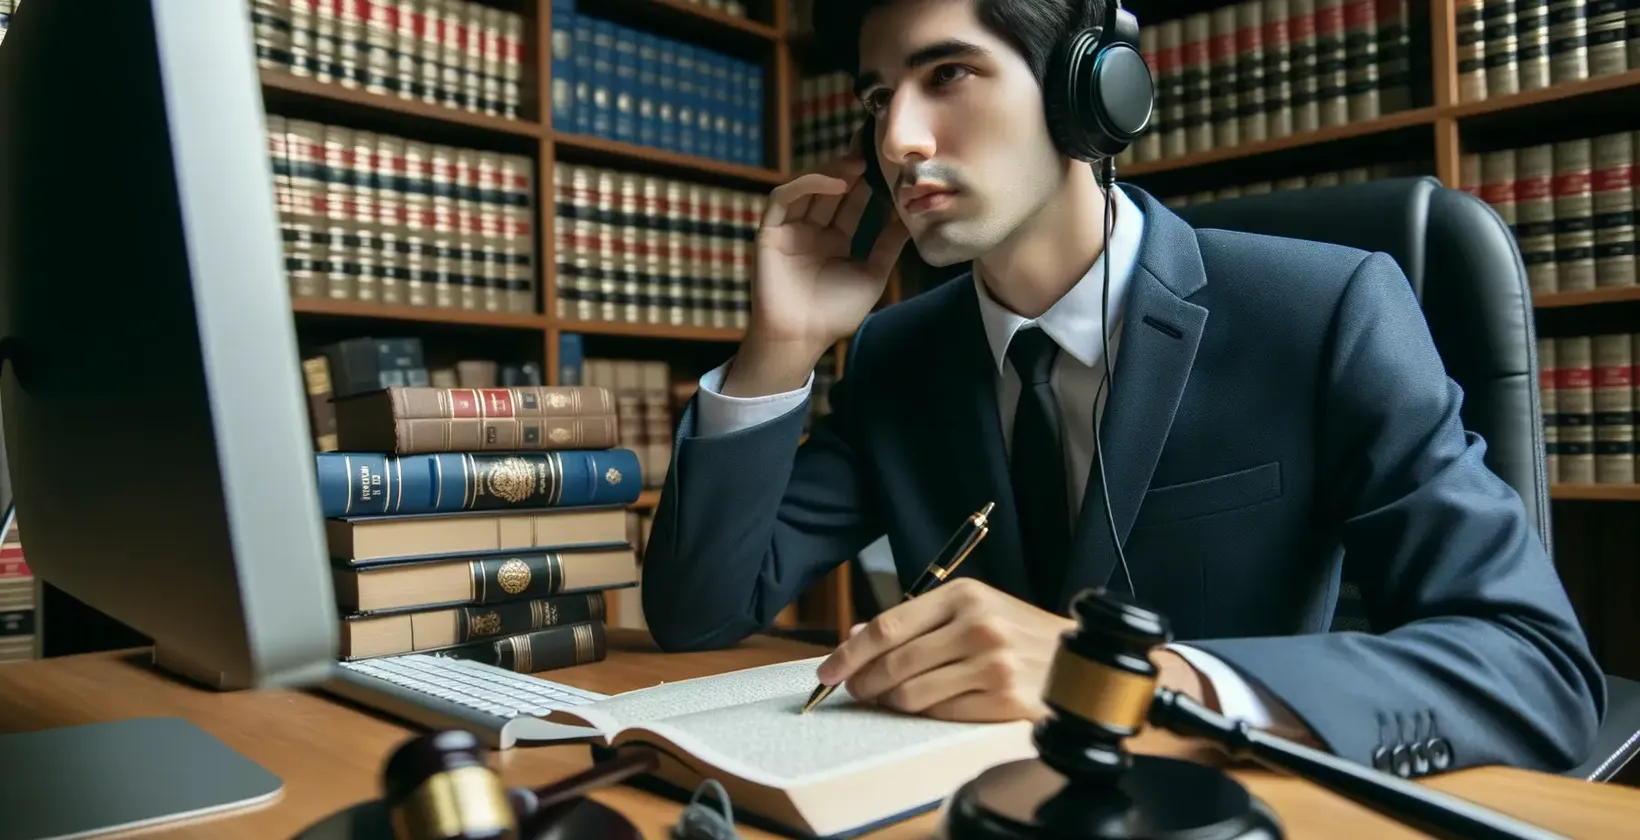 Teisinės transkripcijos paslaugas pristato profesionalas su ausinėmis teisės bibliotekoje.